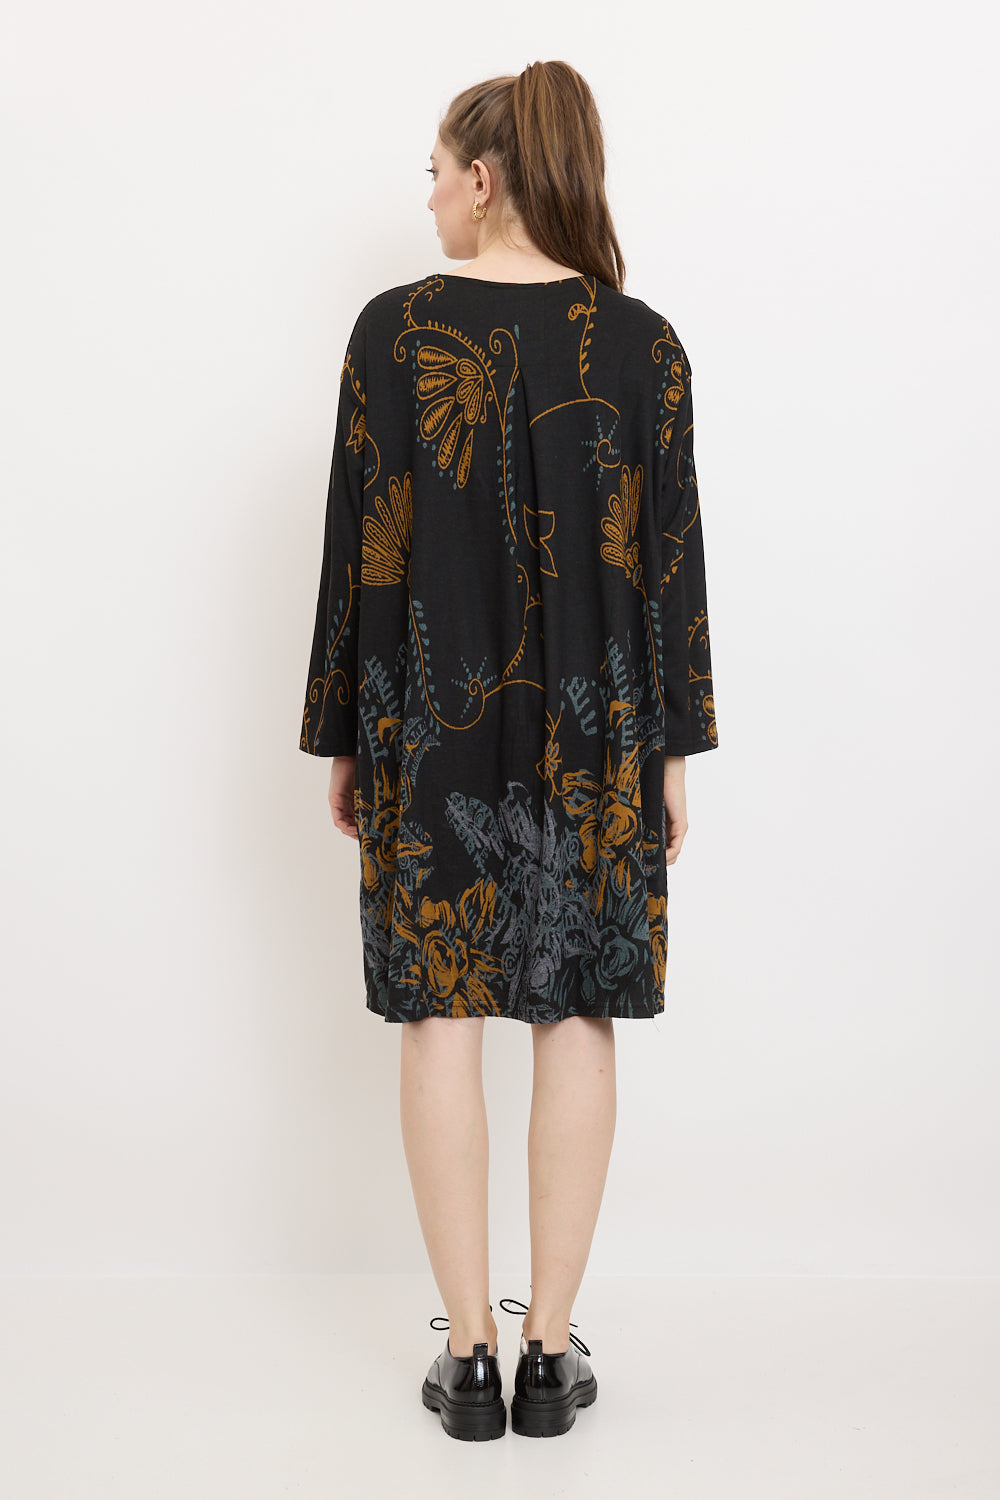 Wildflower patterned dress